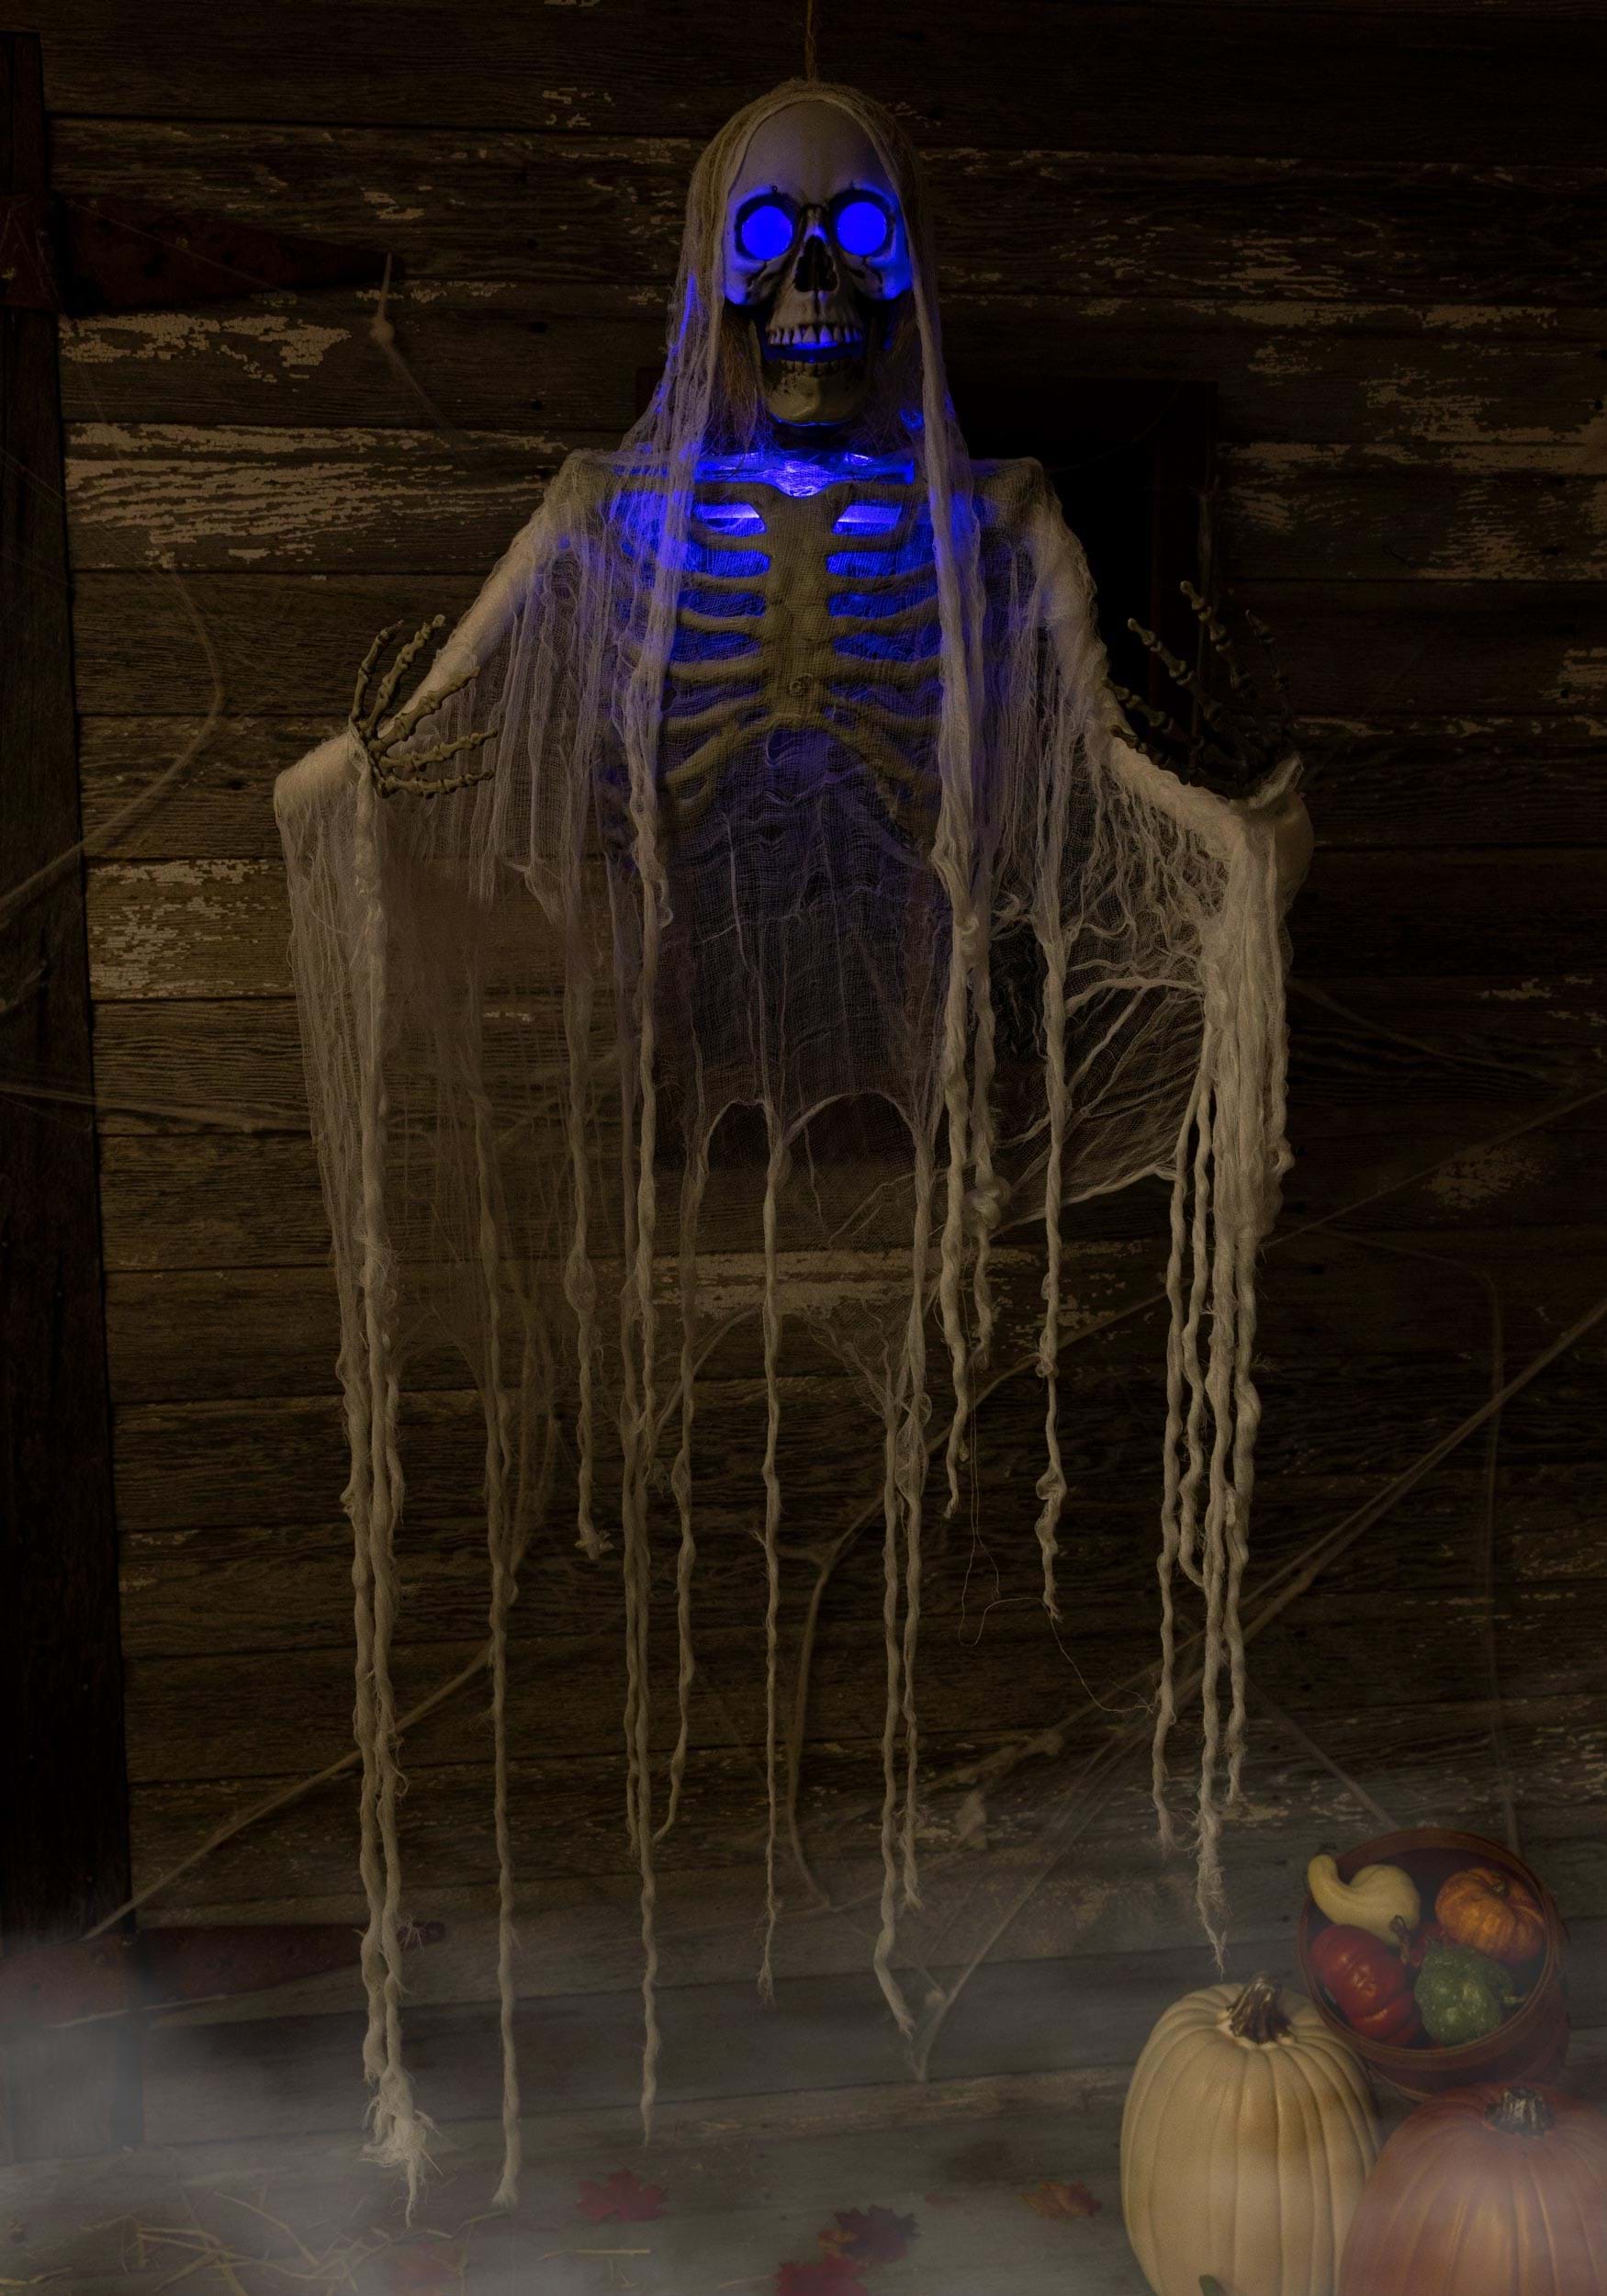 Hanging Light Up Skeleton With Blue Lights Halloween Decoration